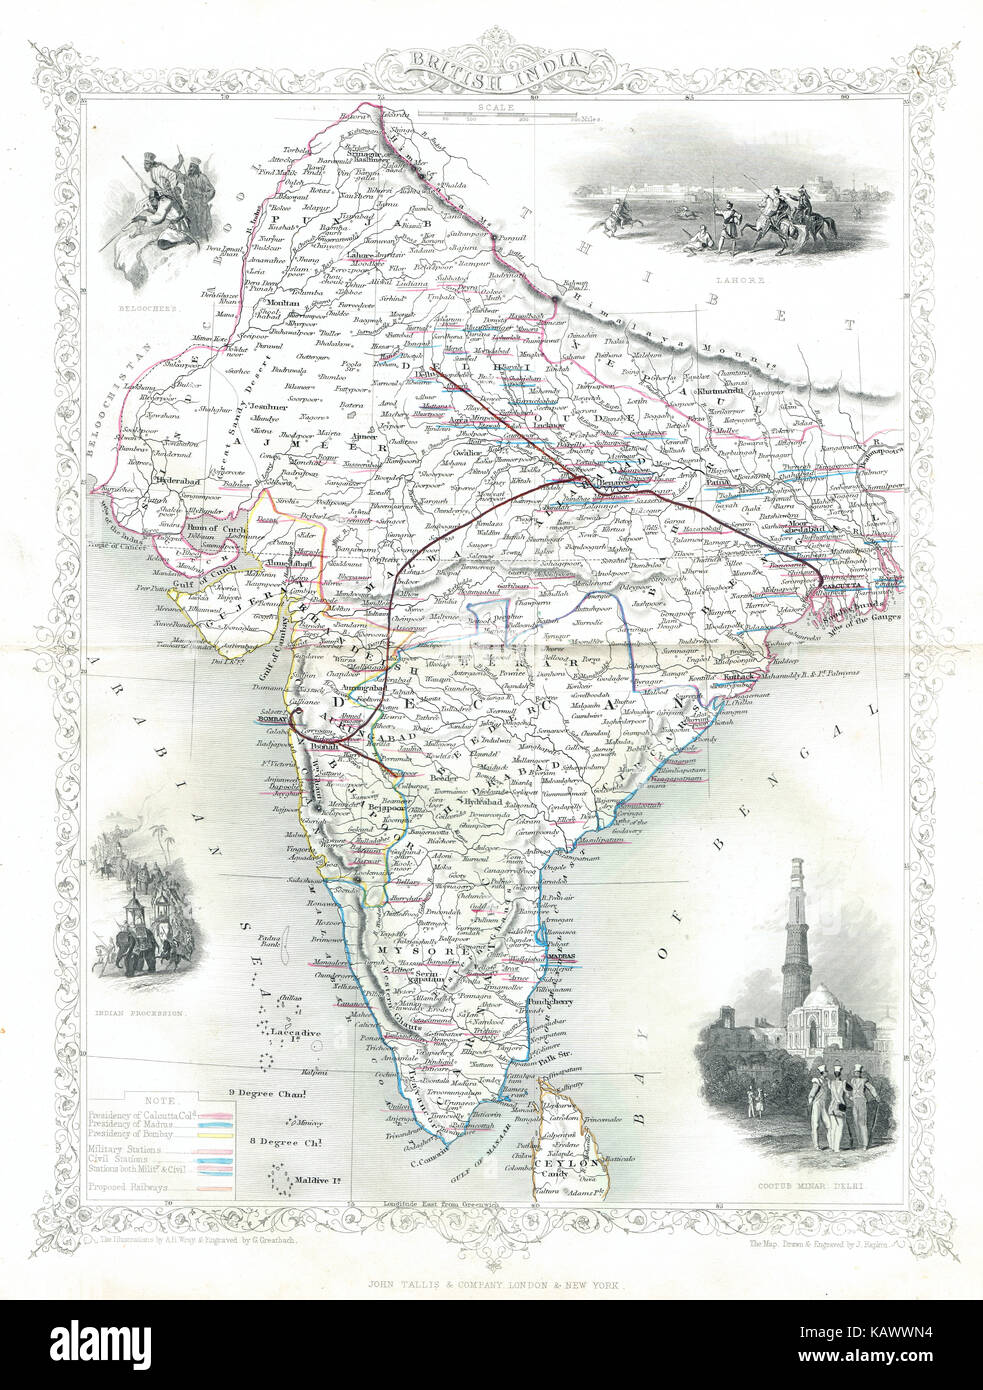 Carte illustrée de l'Inde britannique au xixe siècle Banque D'Images